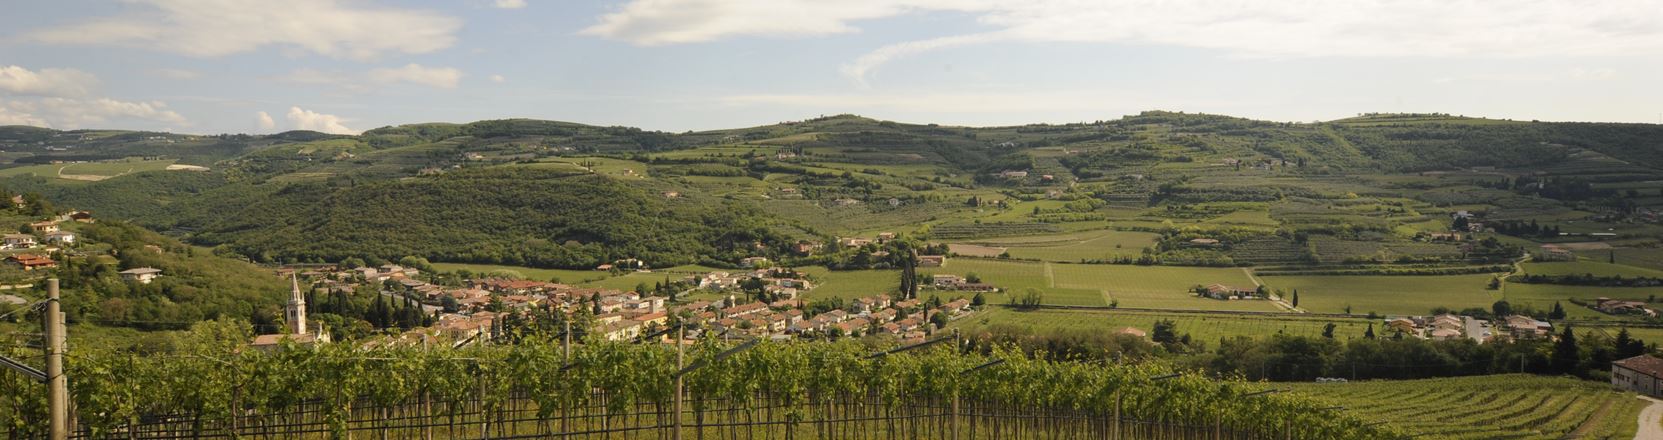 Valley with vineyard - Mezzane di Sotto